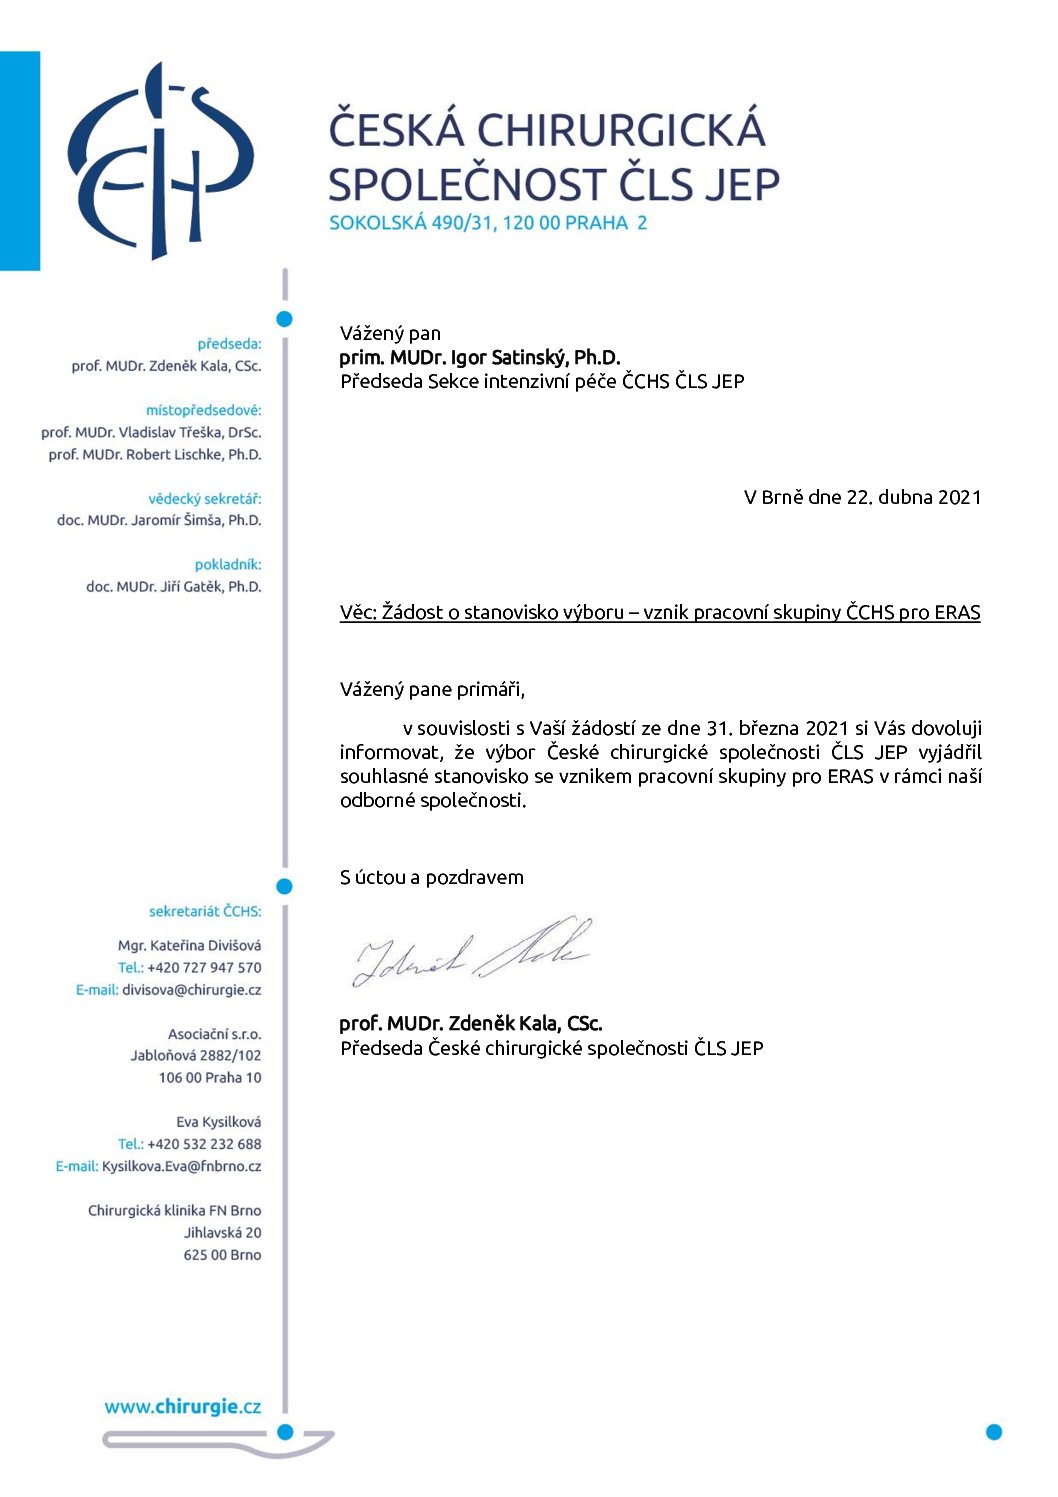 Stanovisko výboru ČCHS ČLS JEP – Vznik pracovní skupiny ERAS (22. 4. 2021)